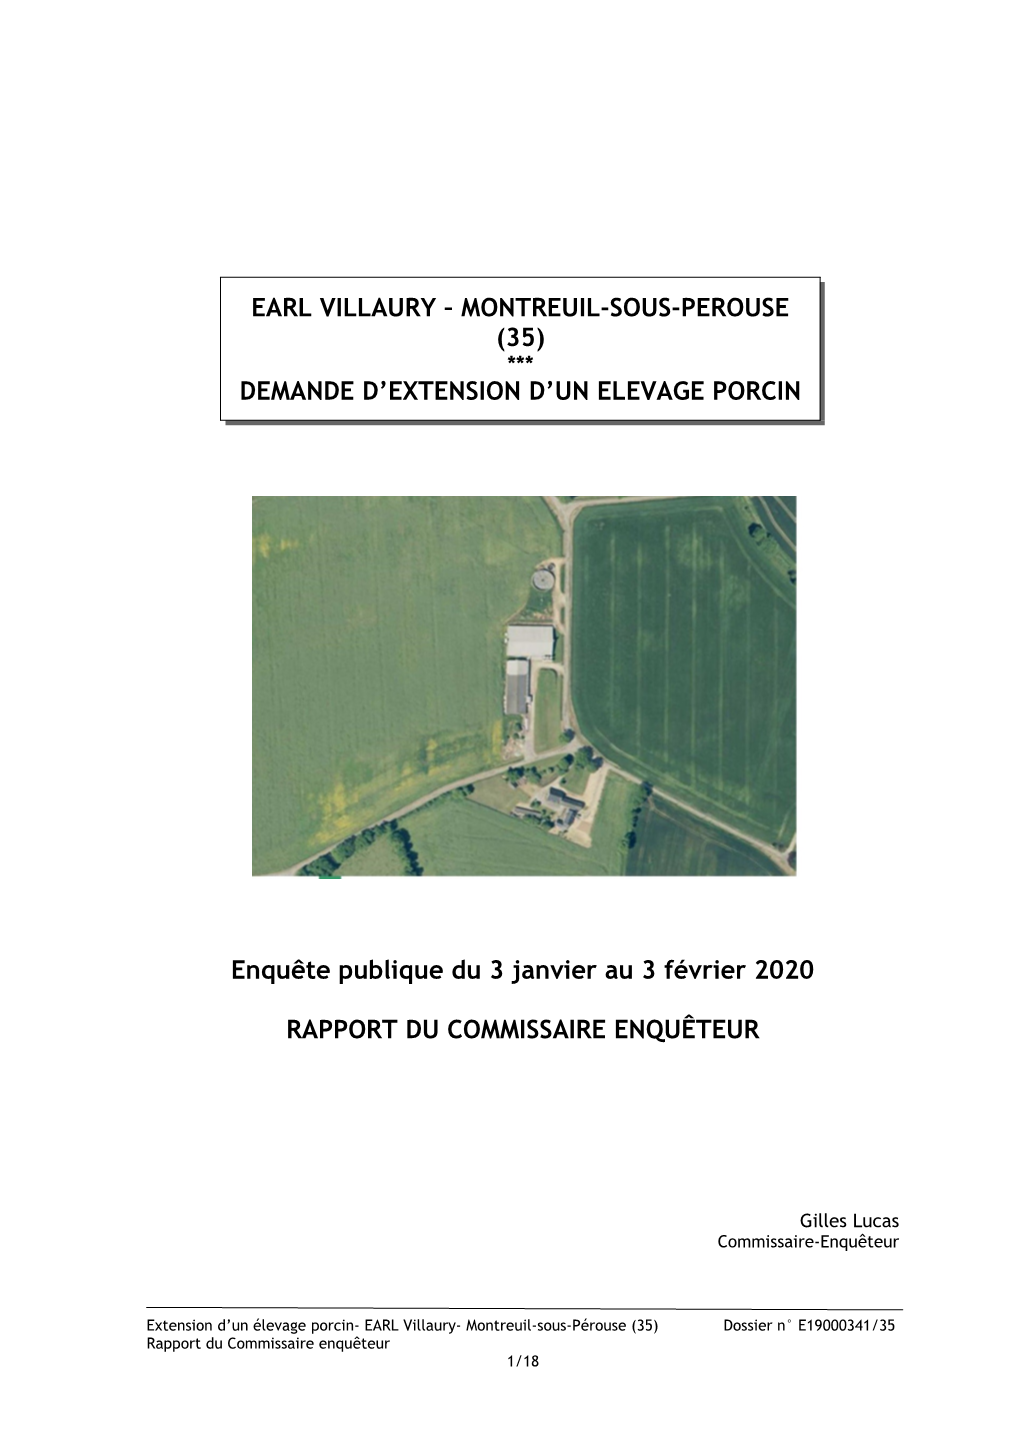 Earl Villaury – Montreuil-Sous-Perouse (35) *** Demande D’Extension D’Un Elevage Porcin